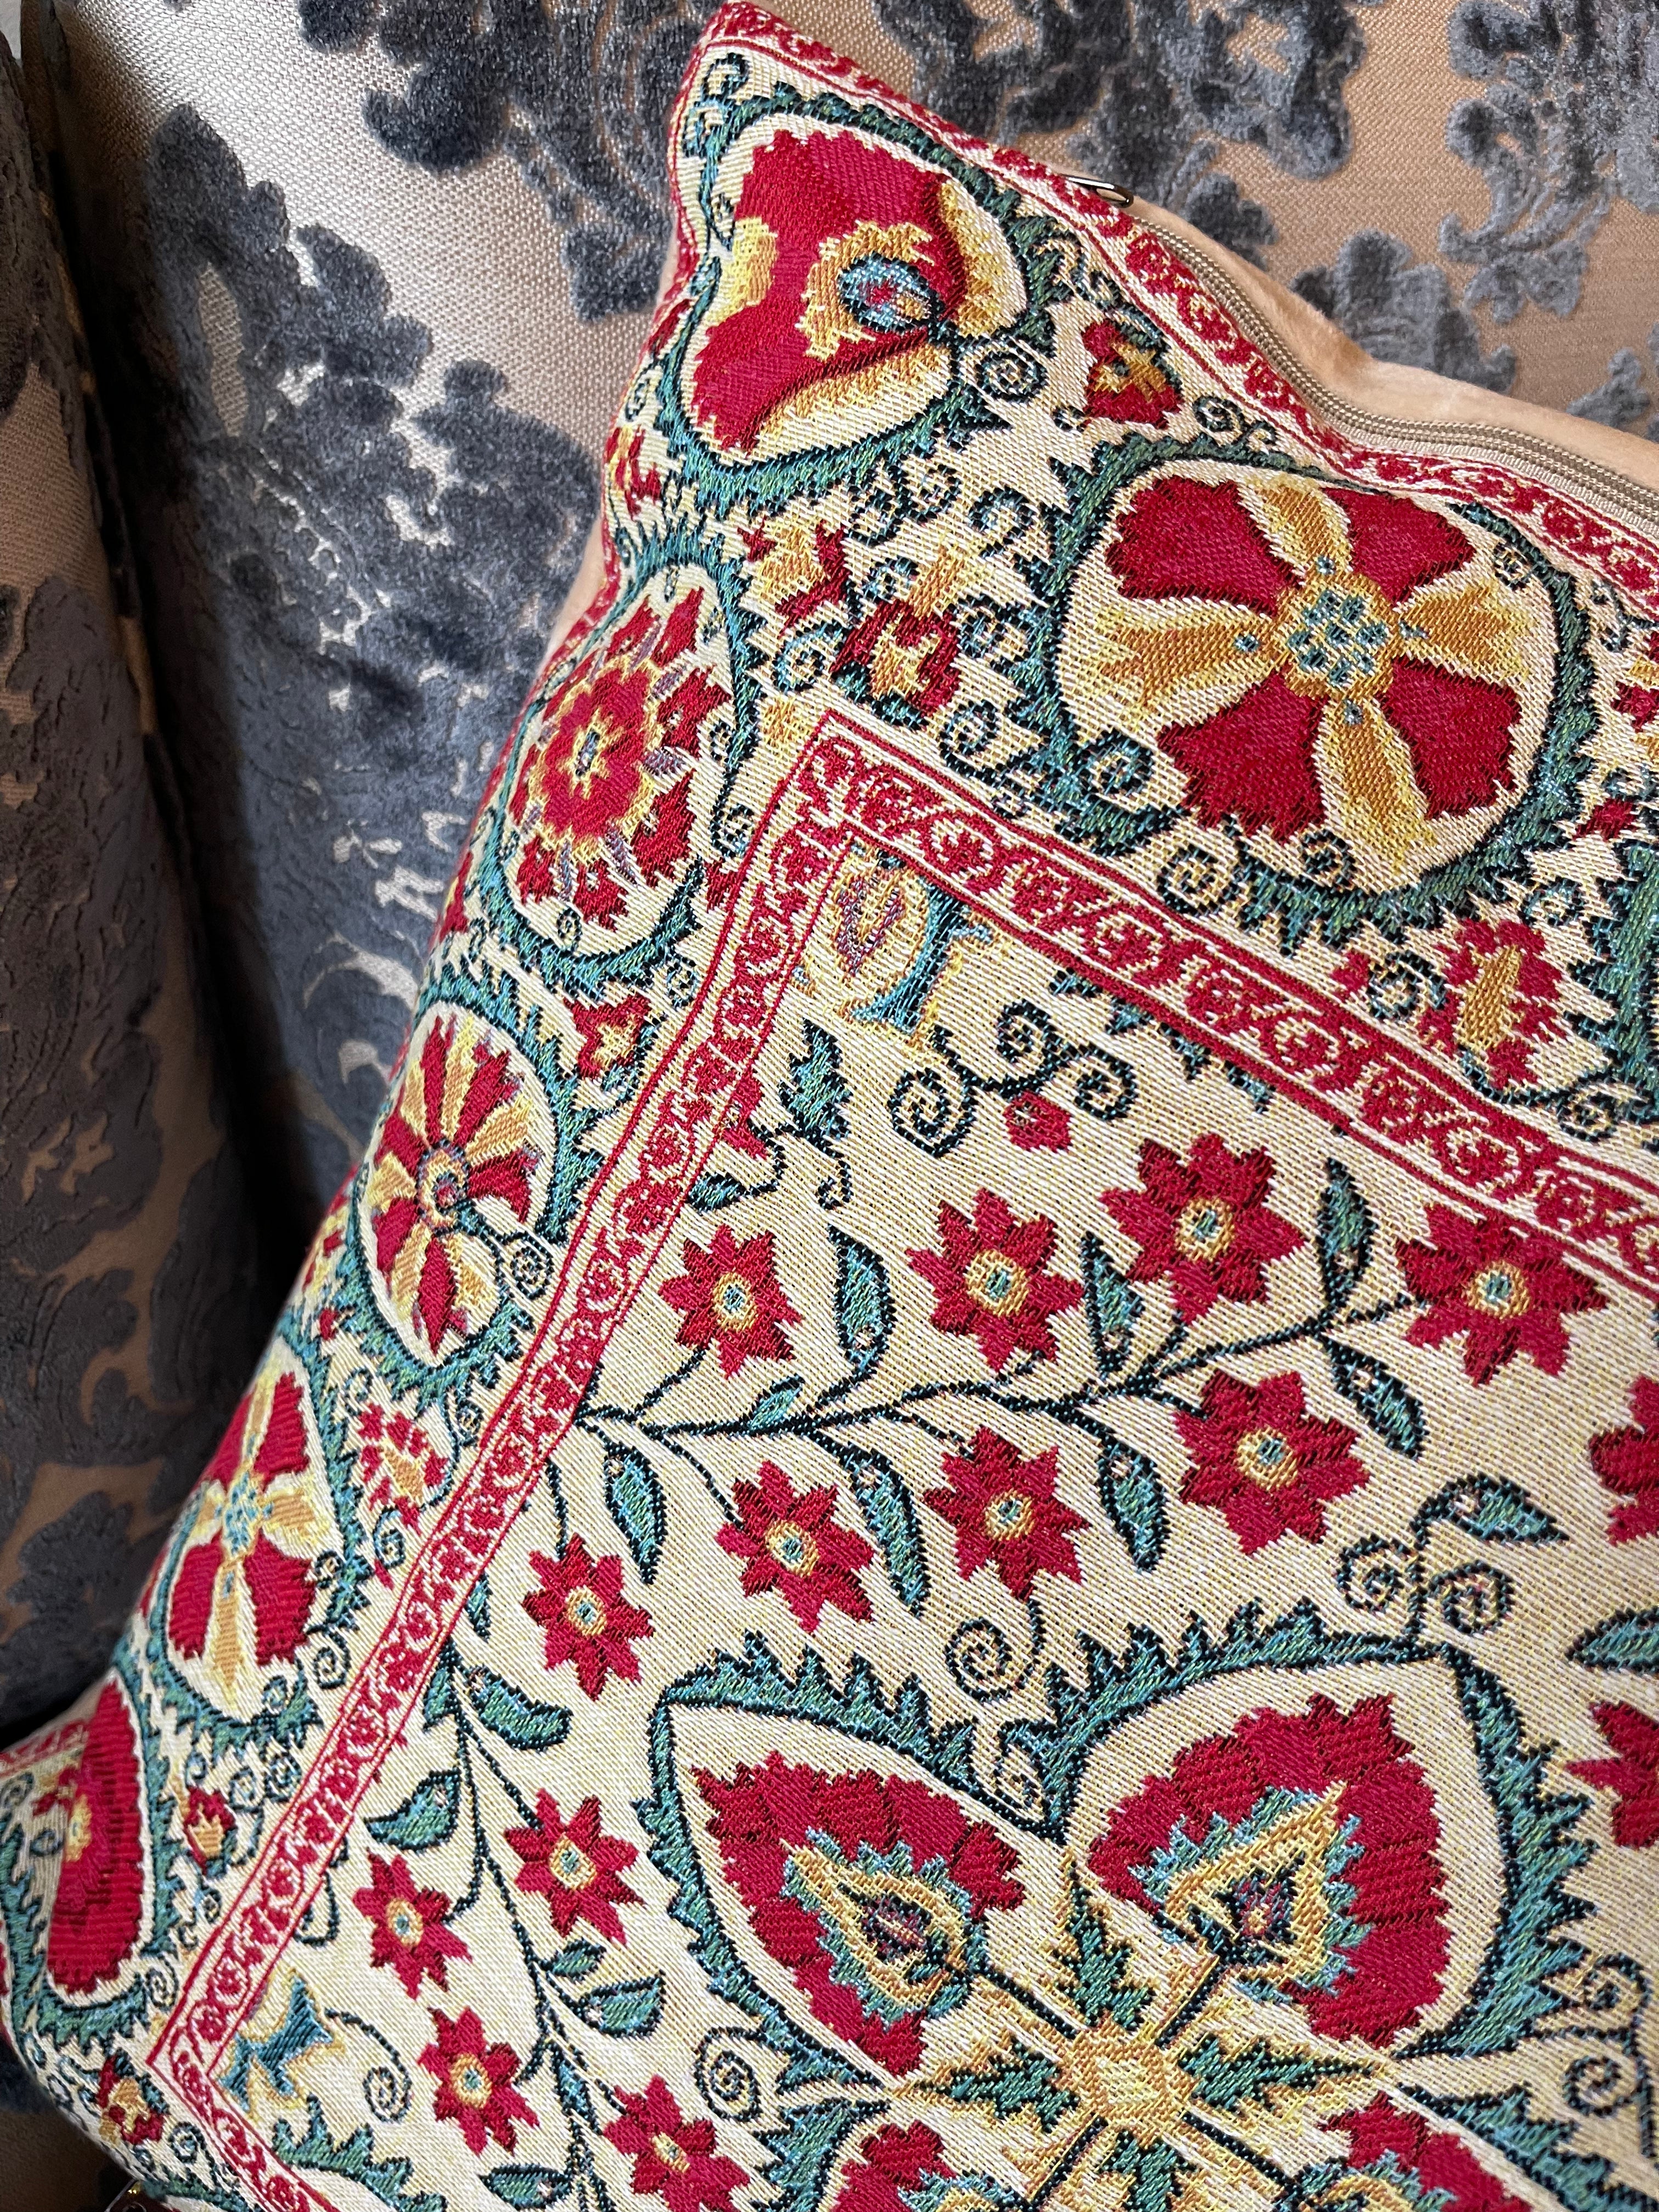 Rolande du Dreuilh—France | Floral Tapestry Pillow